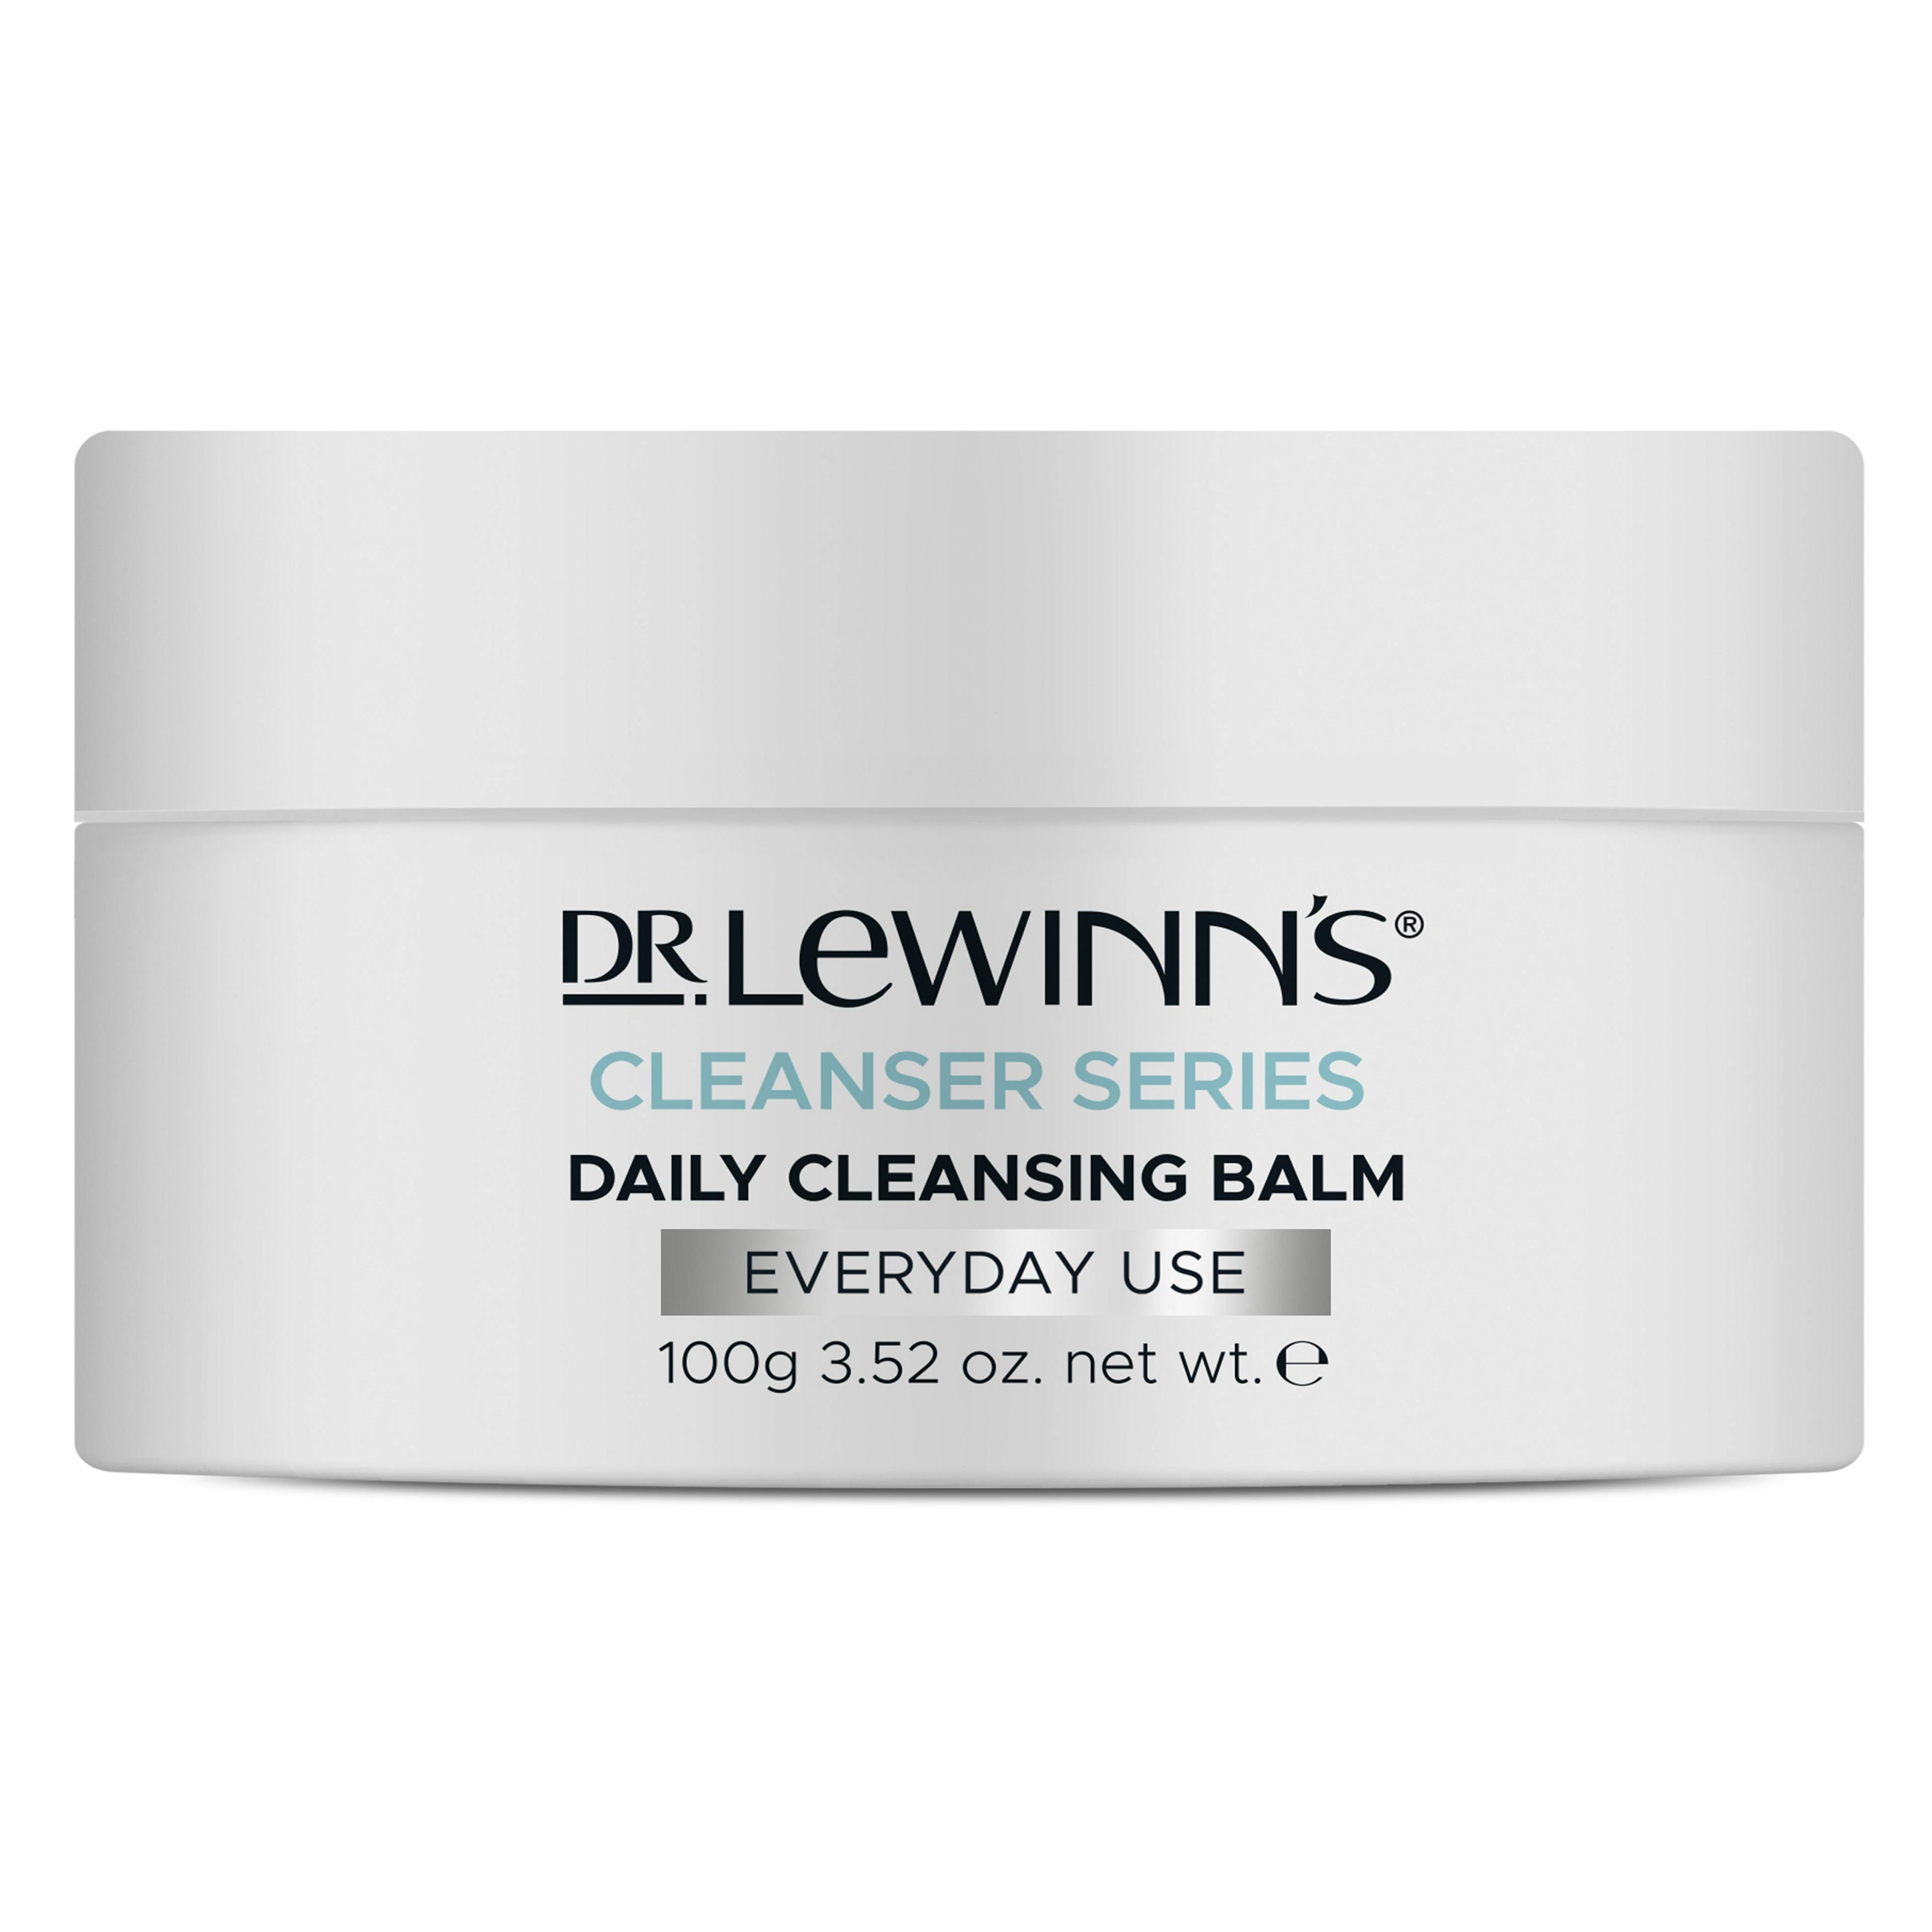 Dr. LeWinn's Cleanser Series Daily Cleansing Balm 100g